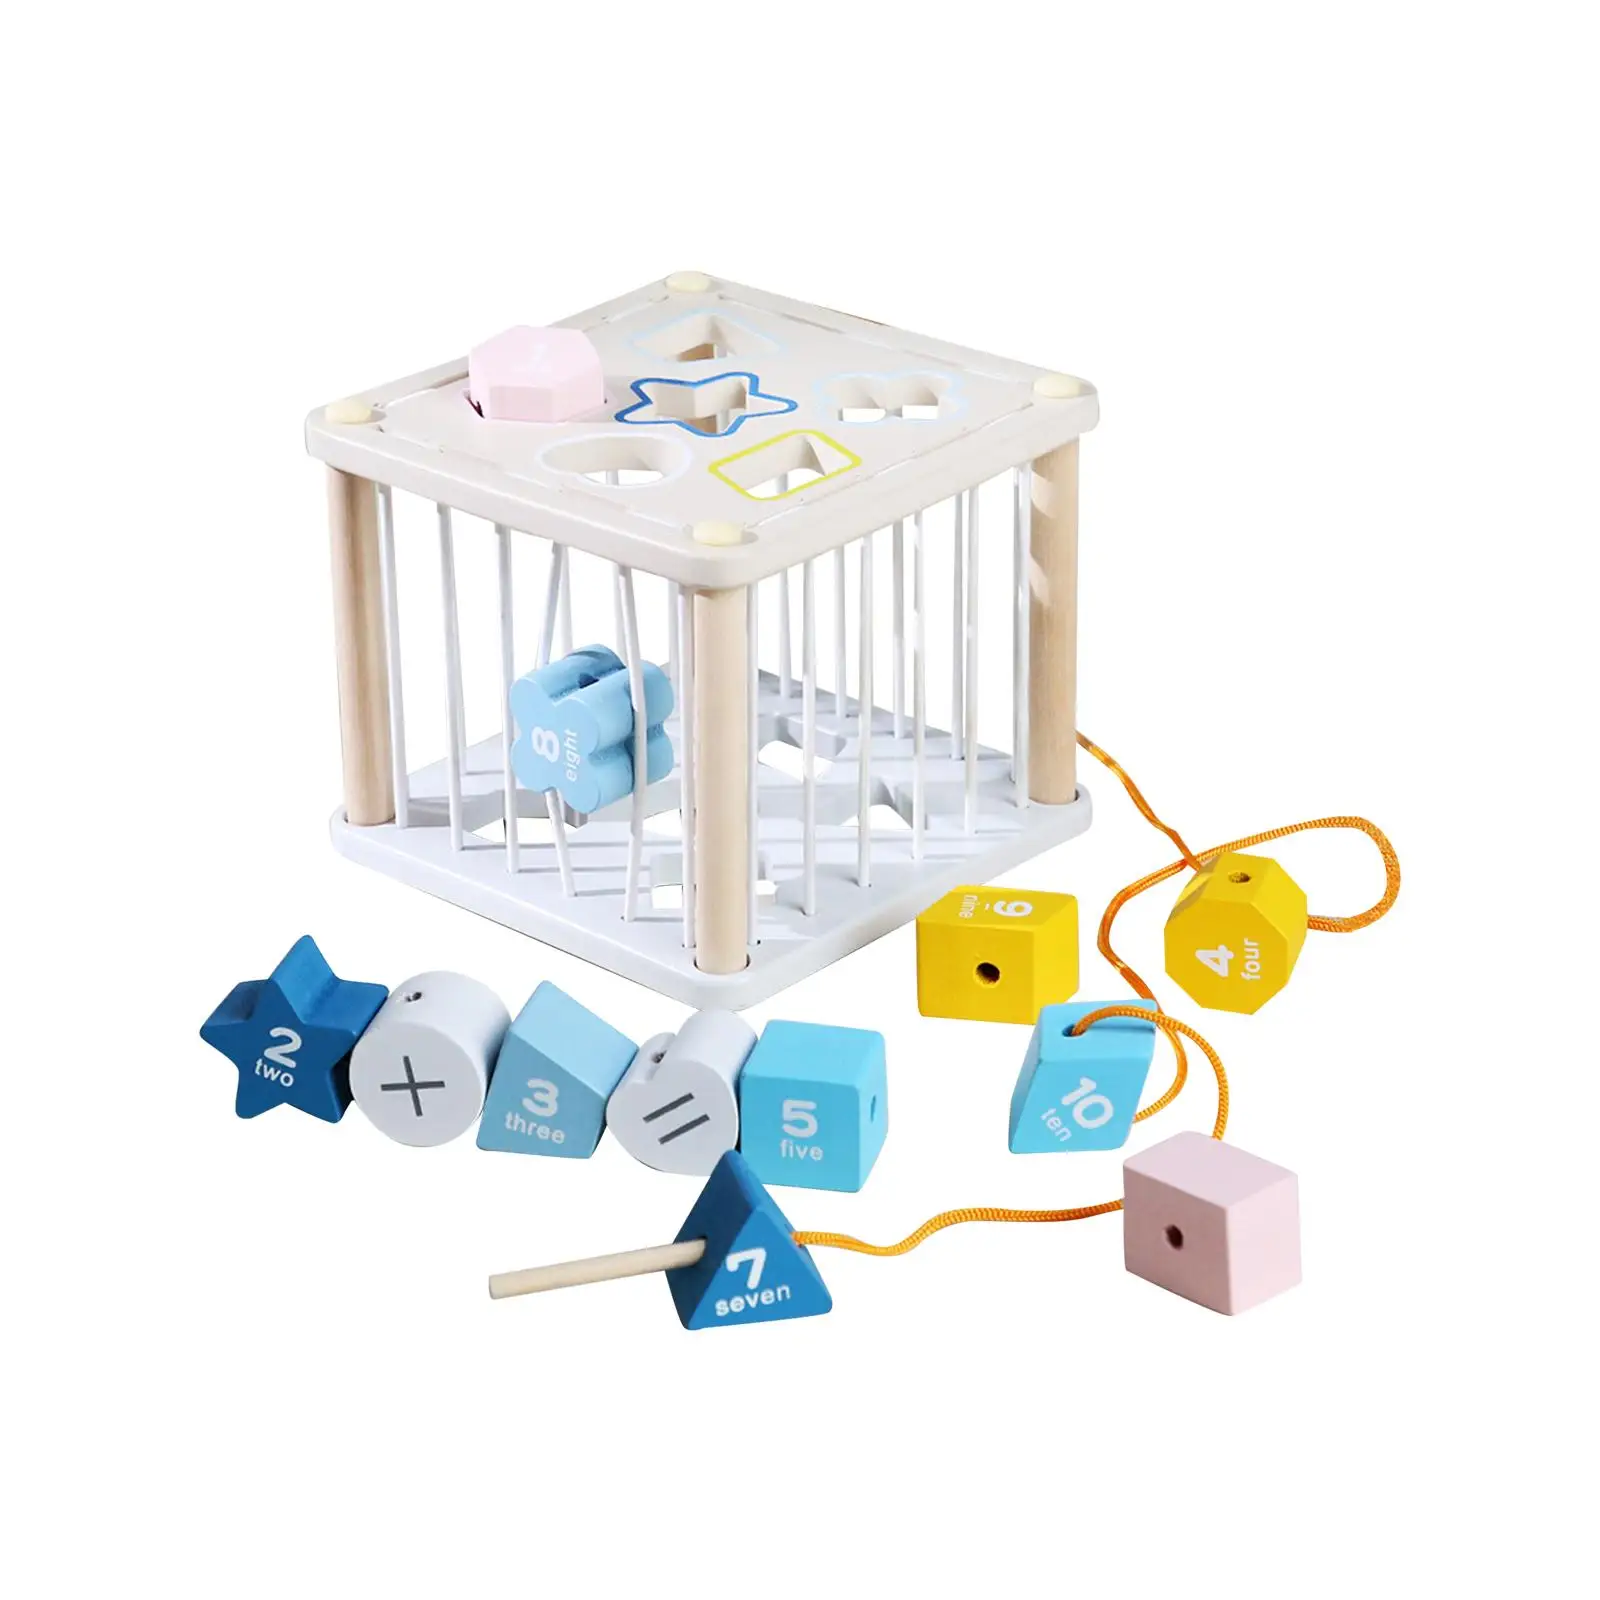 

Сортировочные блоки деревянные цветные когнитивные Игрушки для раннего развития подарок на праздник